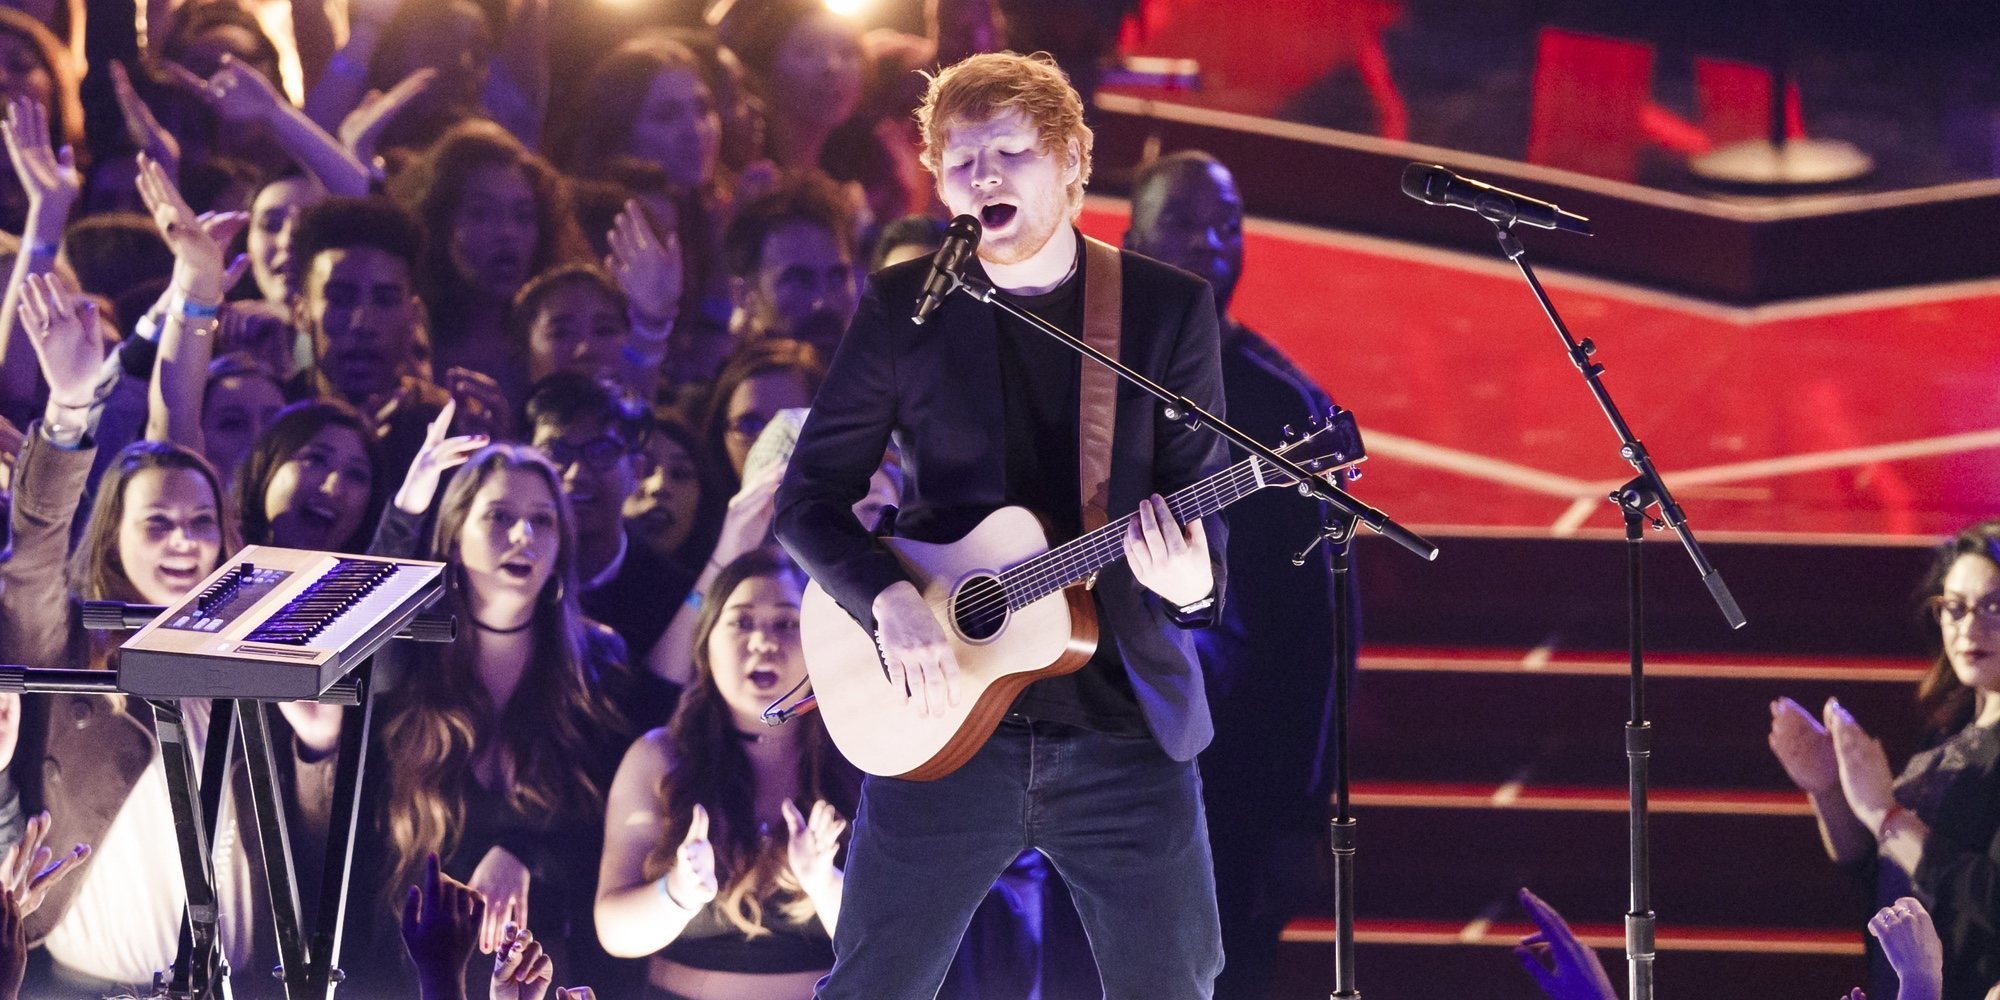 Un fan de Ed Sheeran salta al escenario durante un concierto en Australia